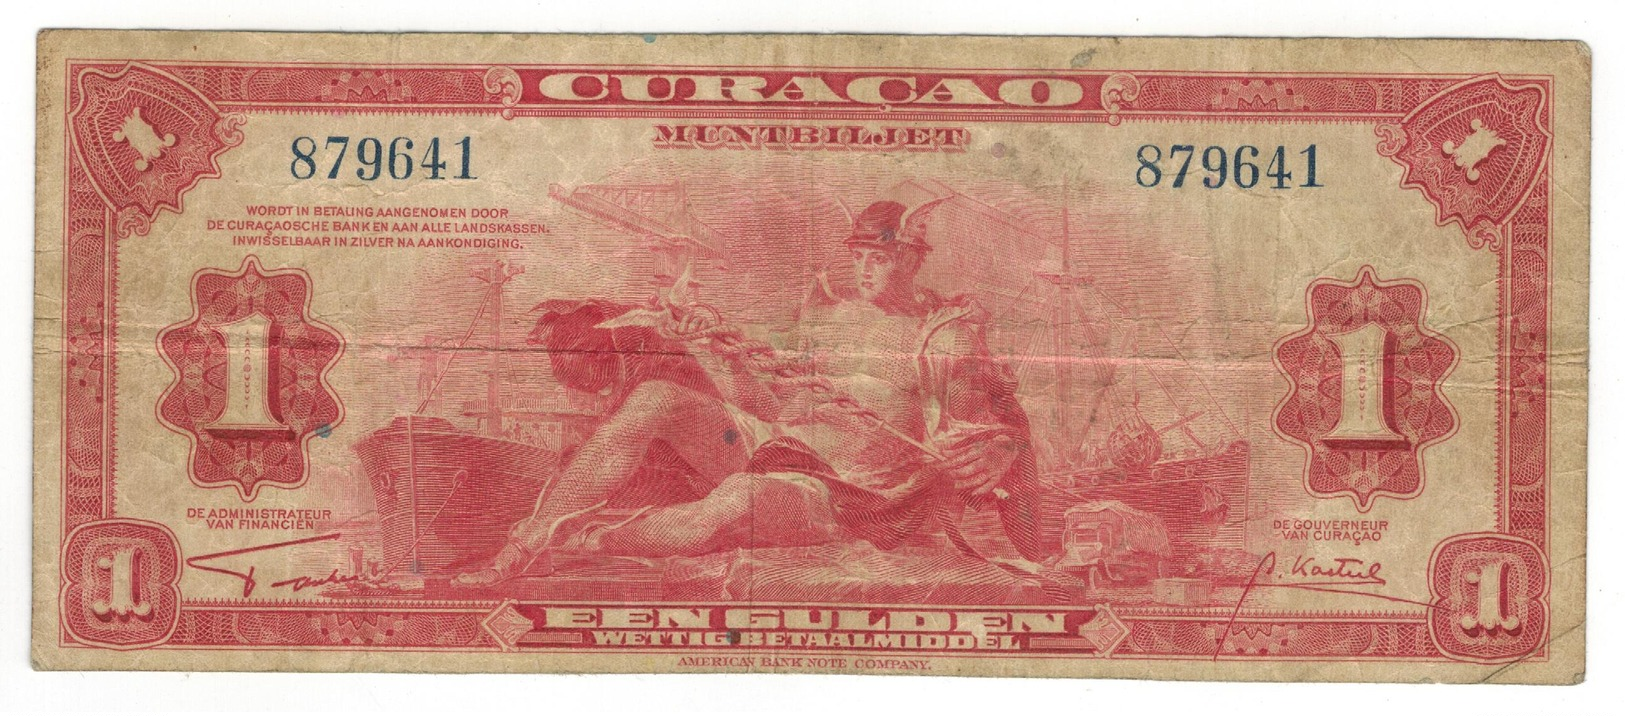 Curacao, 1 Gulden 1942, F+. - Niederländische Antillen (...-1986)